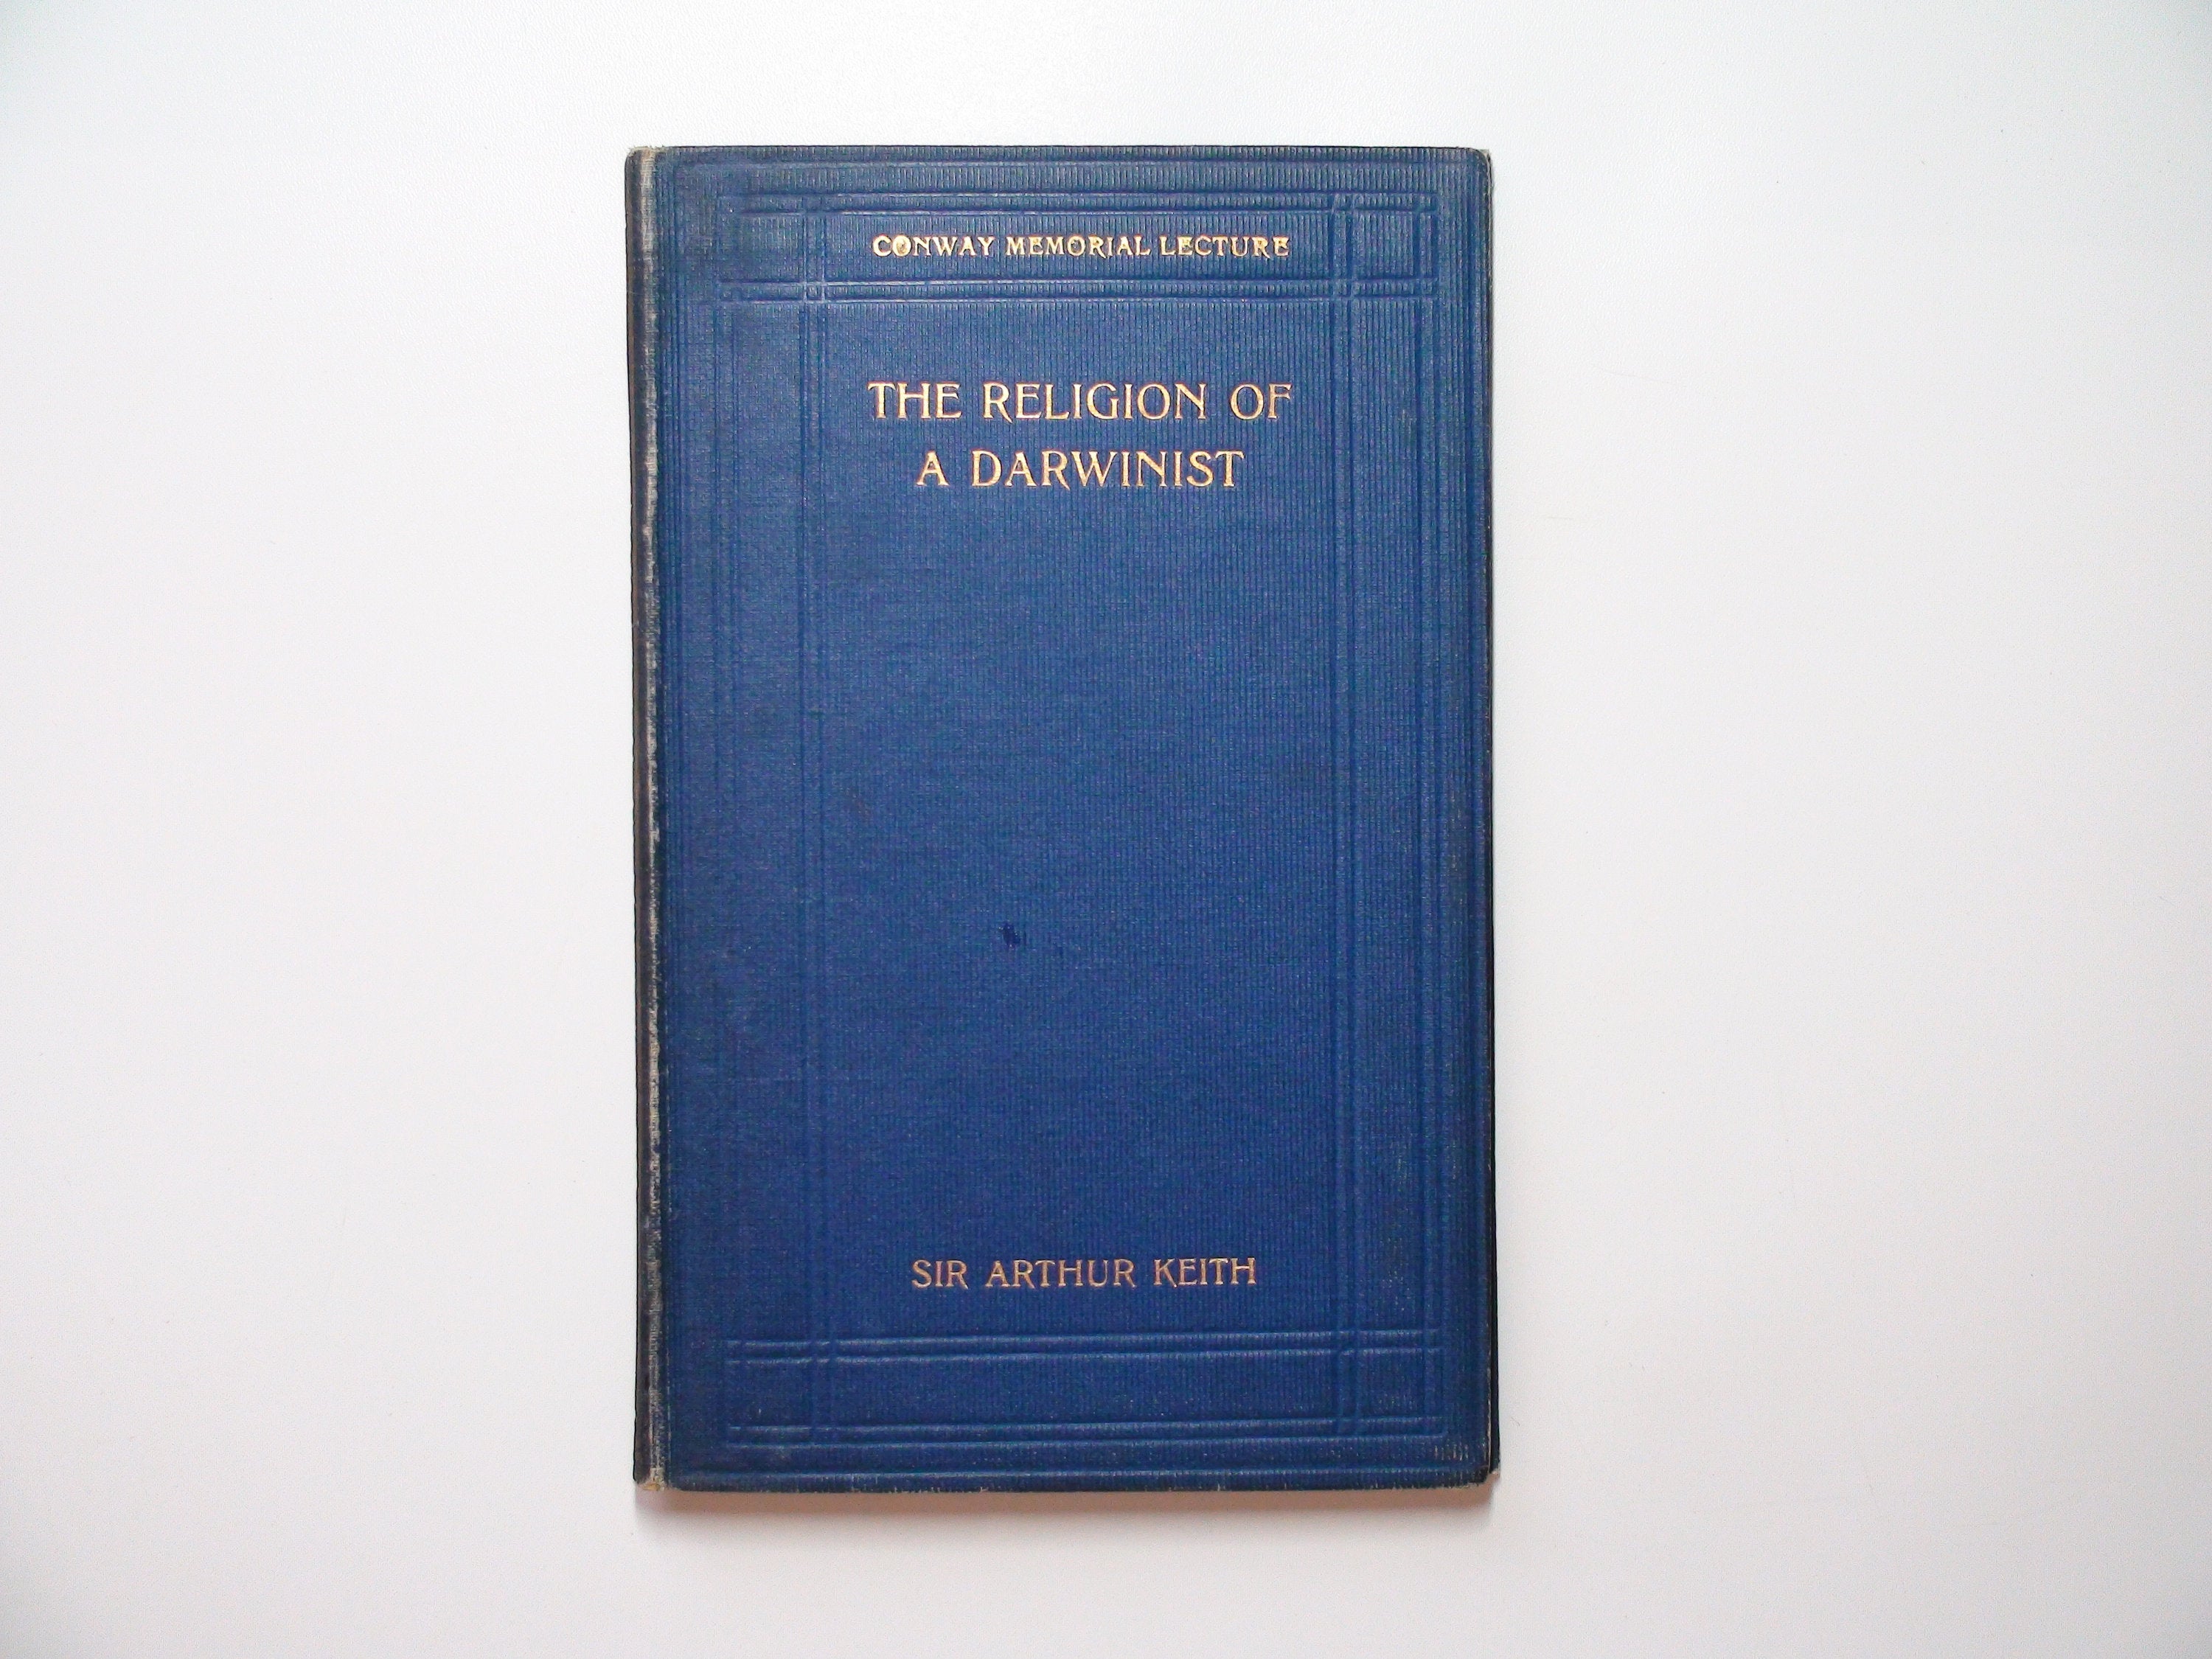 The Religion of a Darwinist, Sir Arthur Keith, 1st Ed, 1925